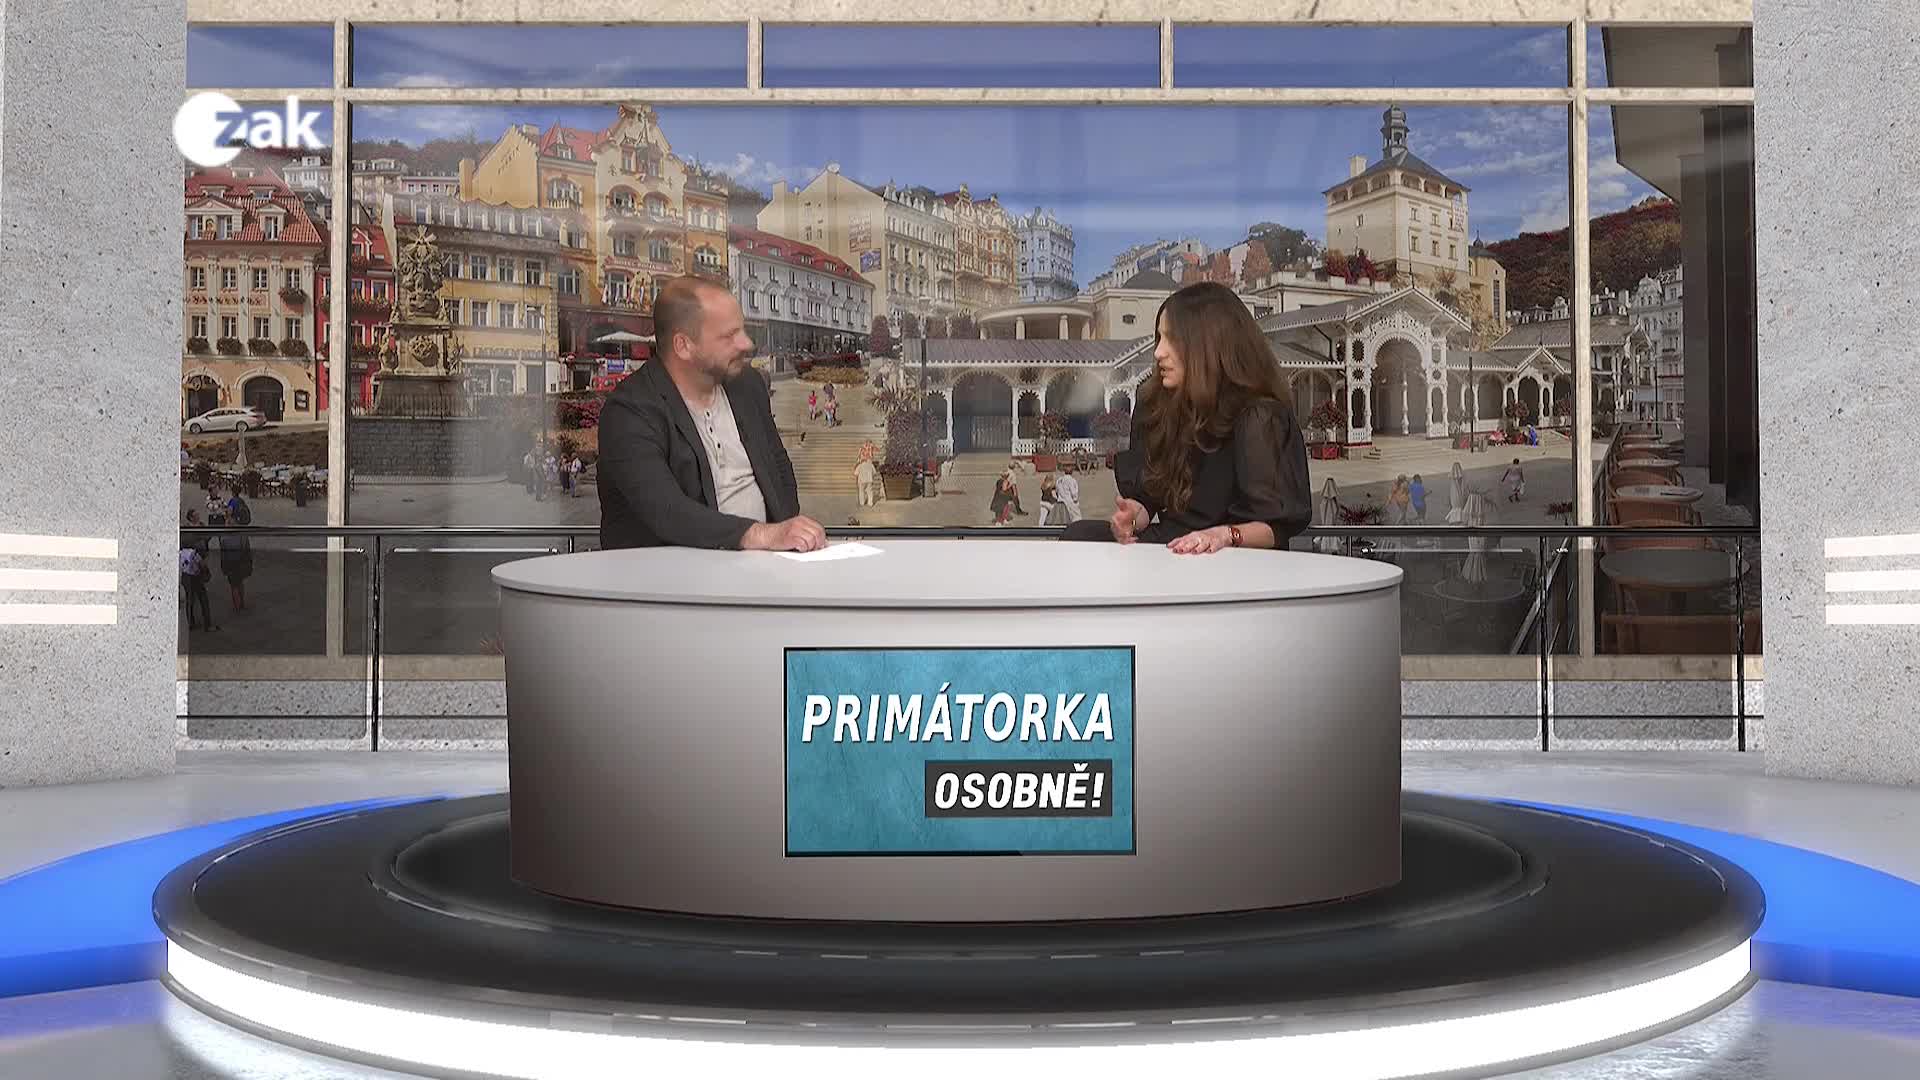 Primátorka osobně - Karlovy Vary